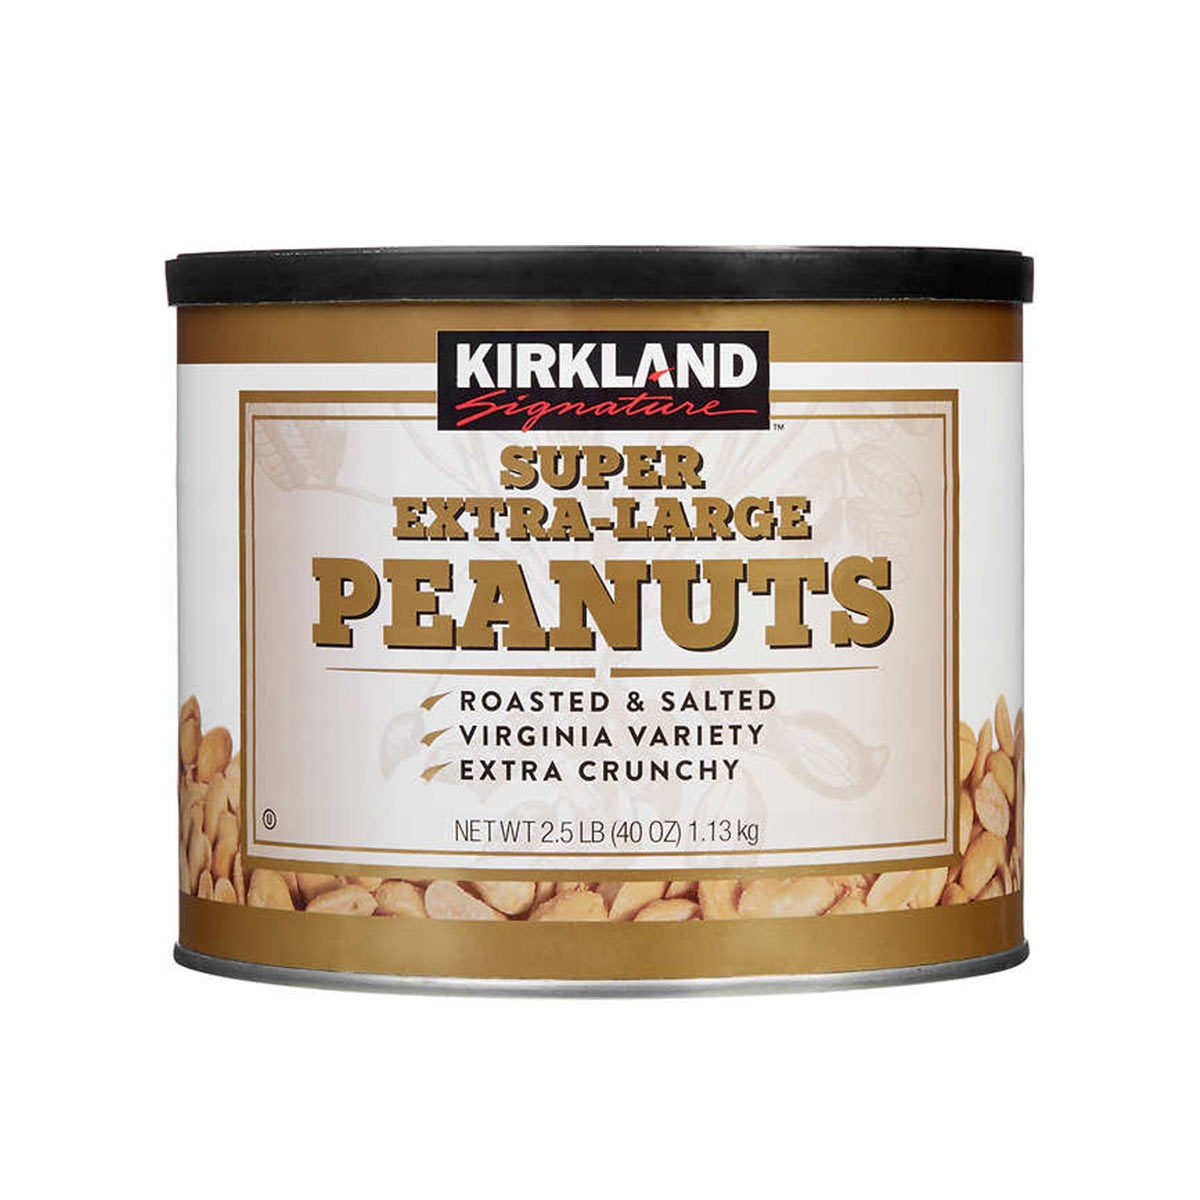 Kirkland Signature Super Extra-Large Roasted & Salted Peanuts, 1.13kg